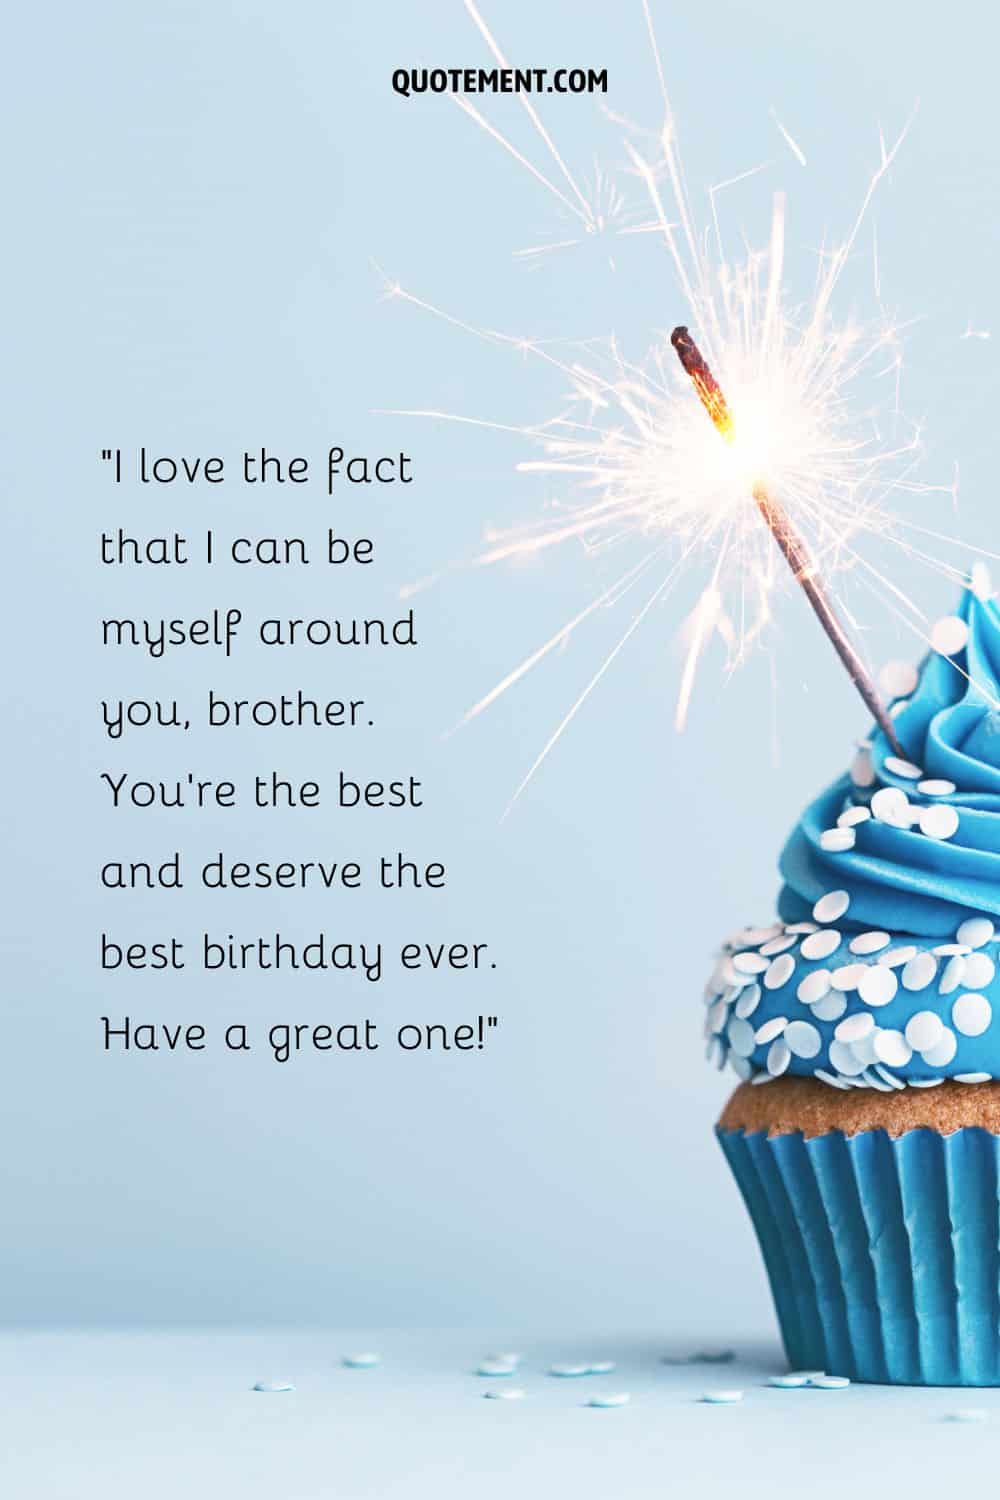 cupcake con glaseado azul que representa el deseo de cumpleaños de un hermano que cumple 72 años